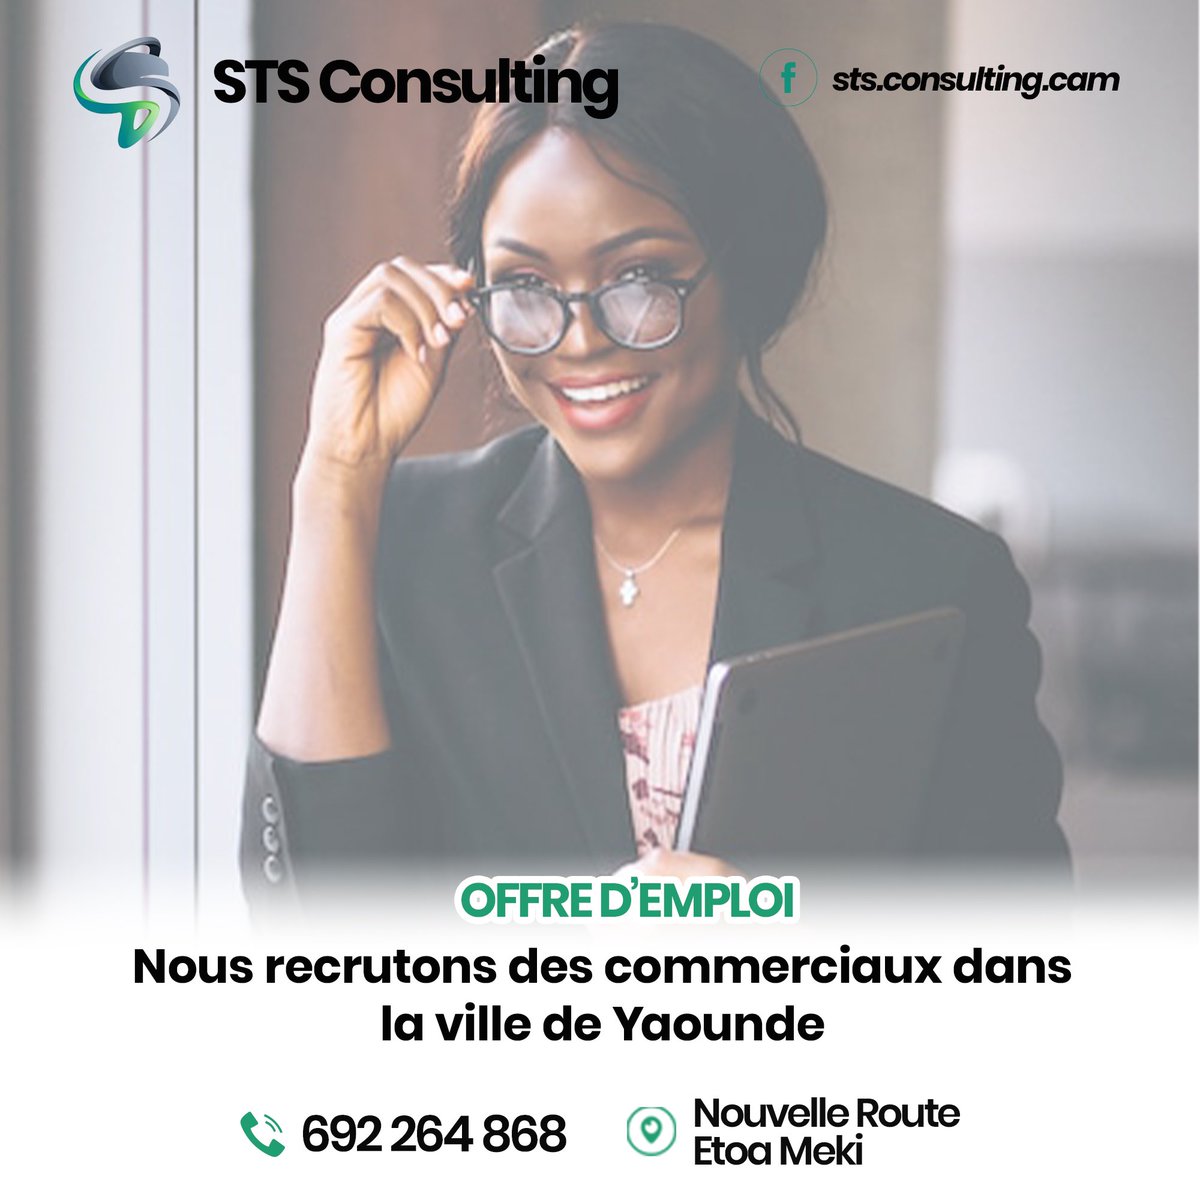 🚨Offre d’Emploi🚨

Nous recrutons des commerciaux dans la ville de Yaoundé , bien vouloir faire parvenir vos dossiers au numéro 692 264 868

#offredemploi #JobAlert #STS